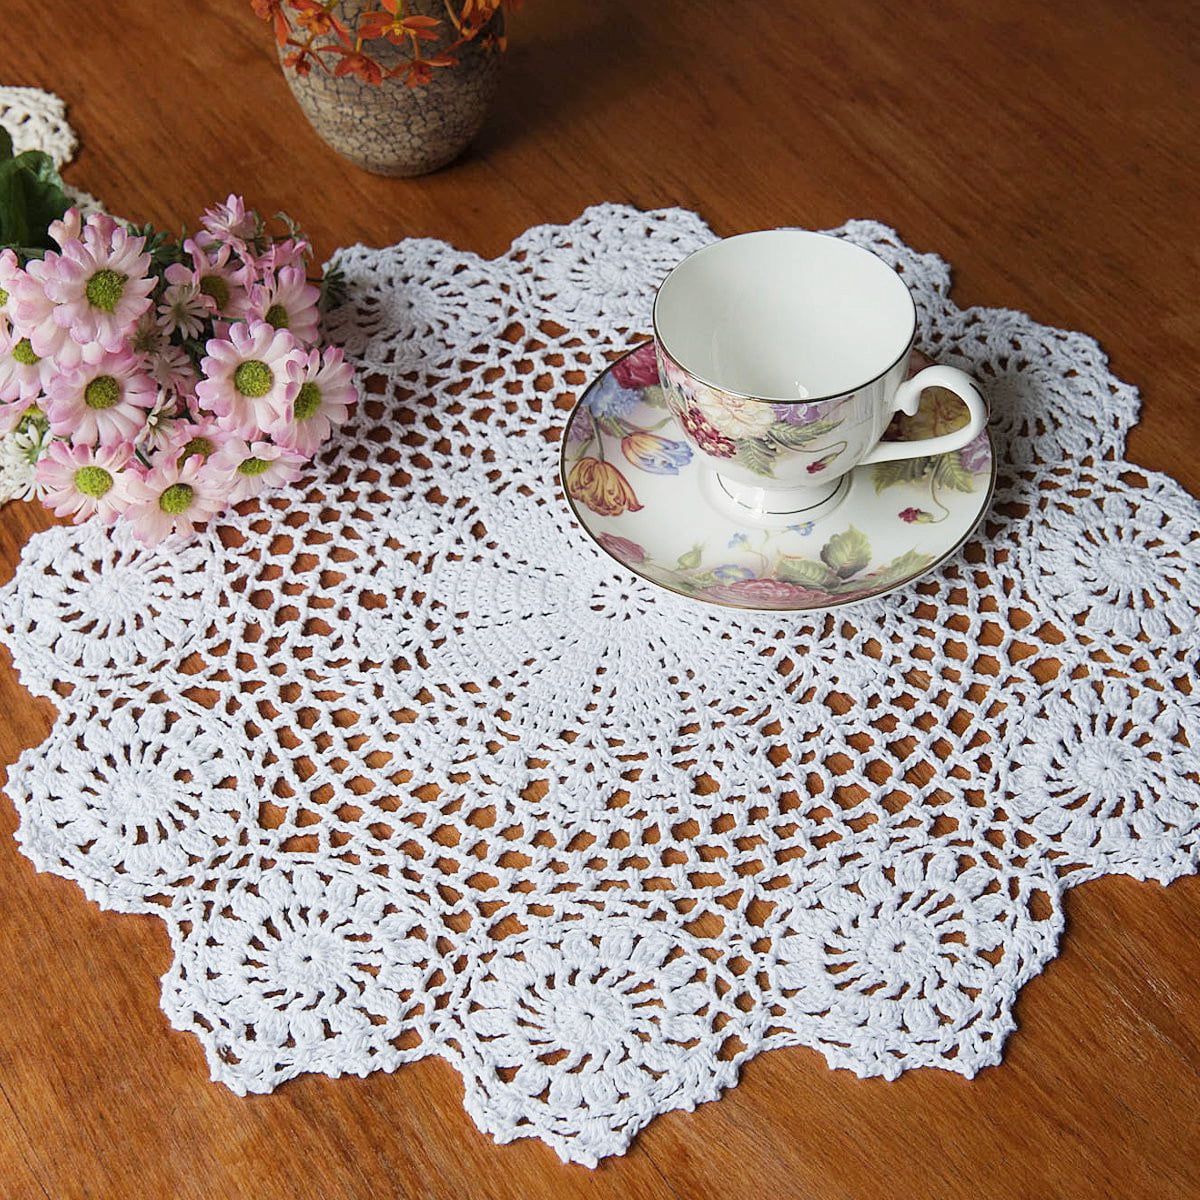 4Pcs/Lot White Vintage Hand Crochet Lace Doilies Round Table Place Mats 8inch 